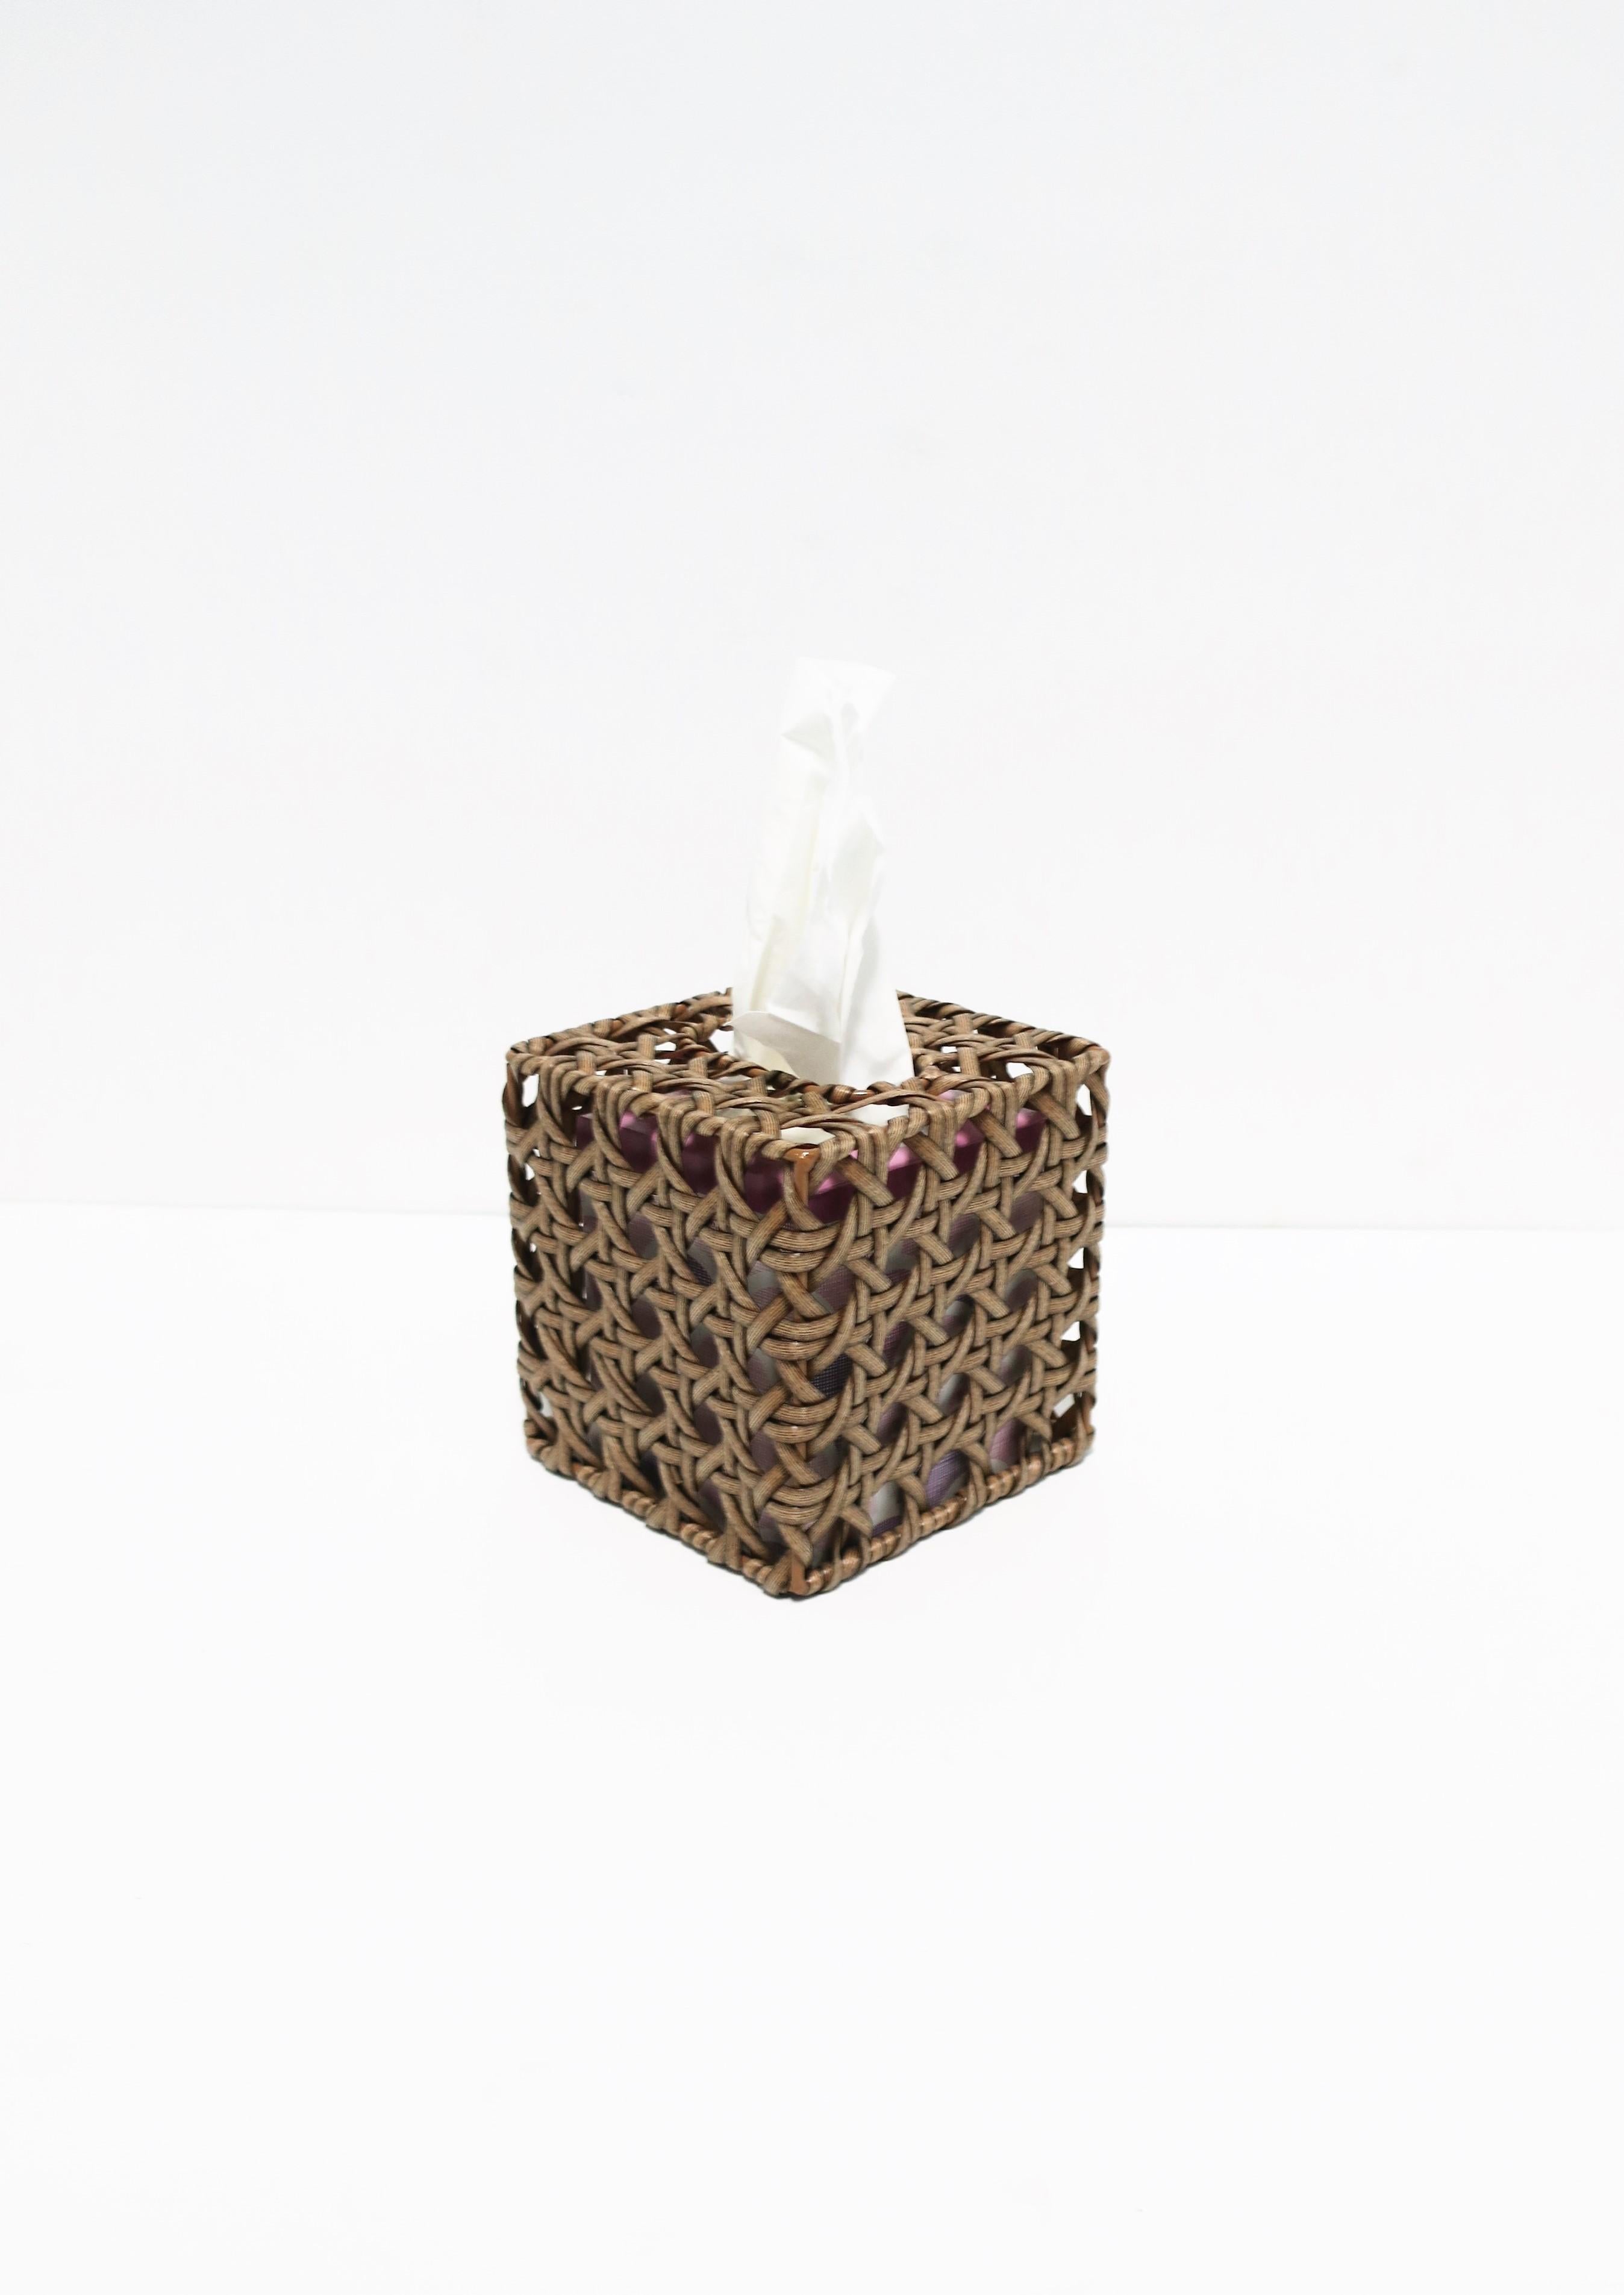 Contemporary Wicker Cane Tissue Box Cover